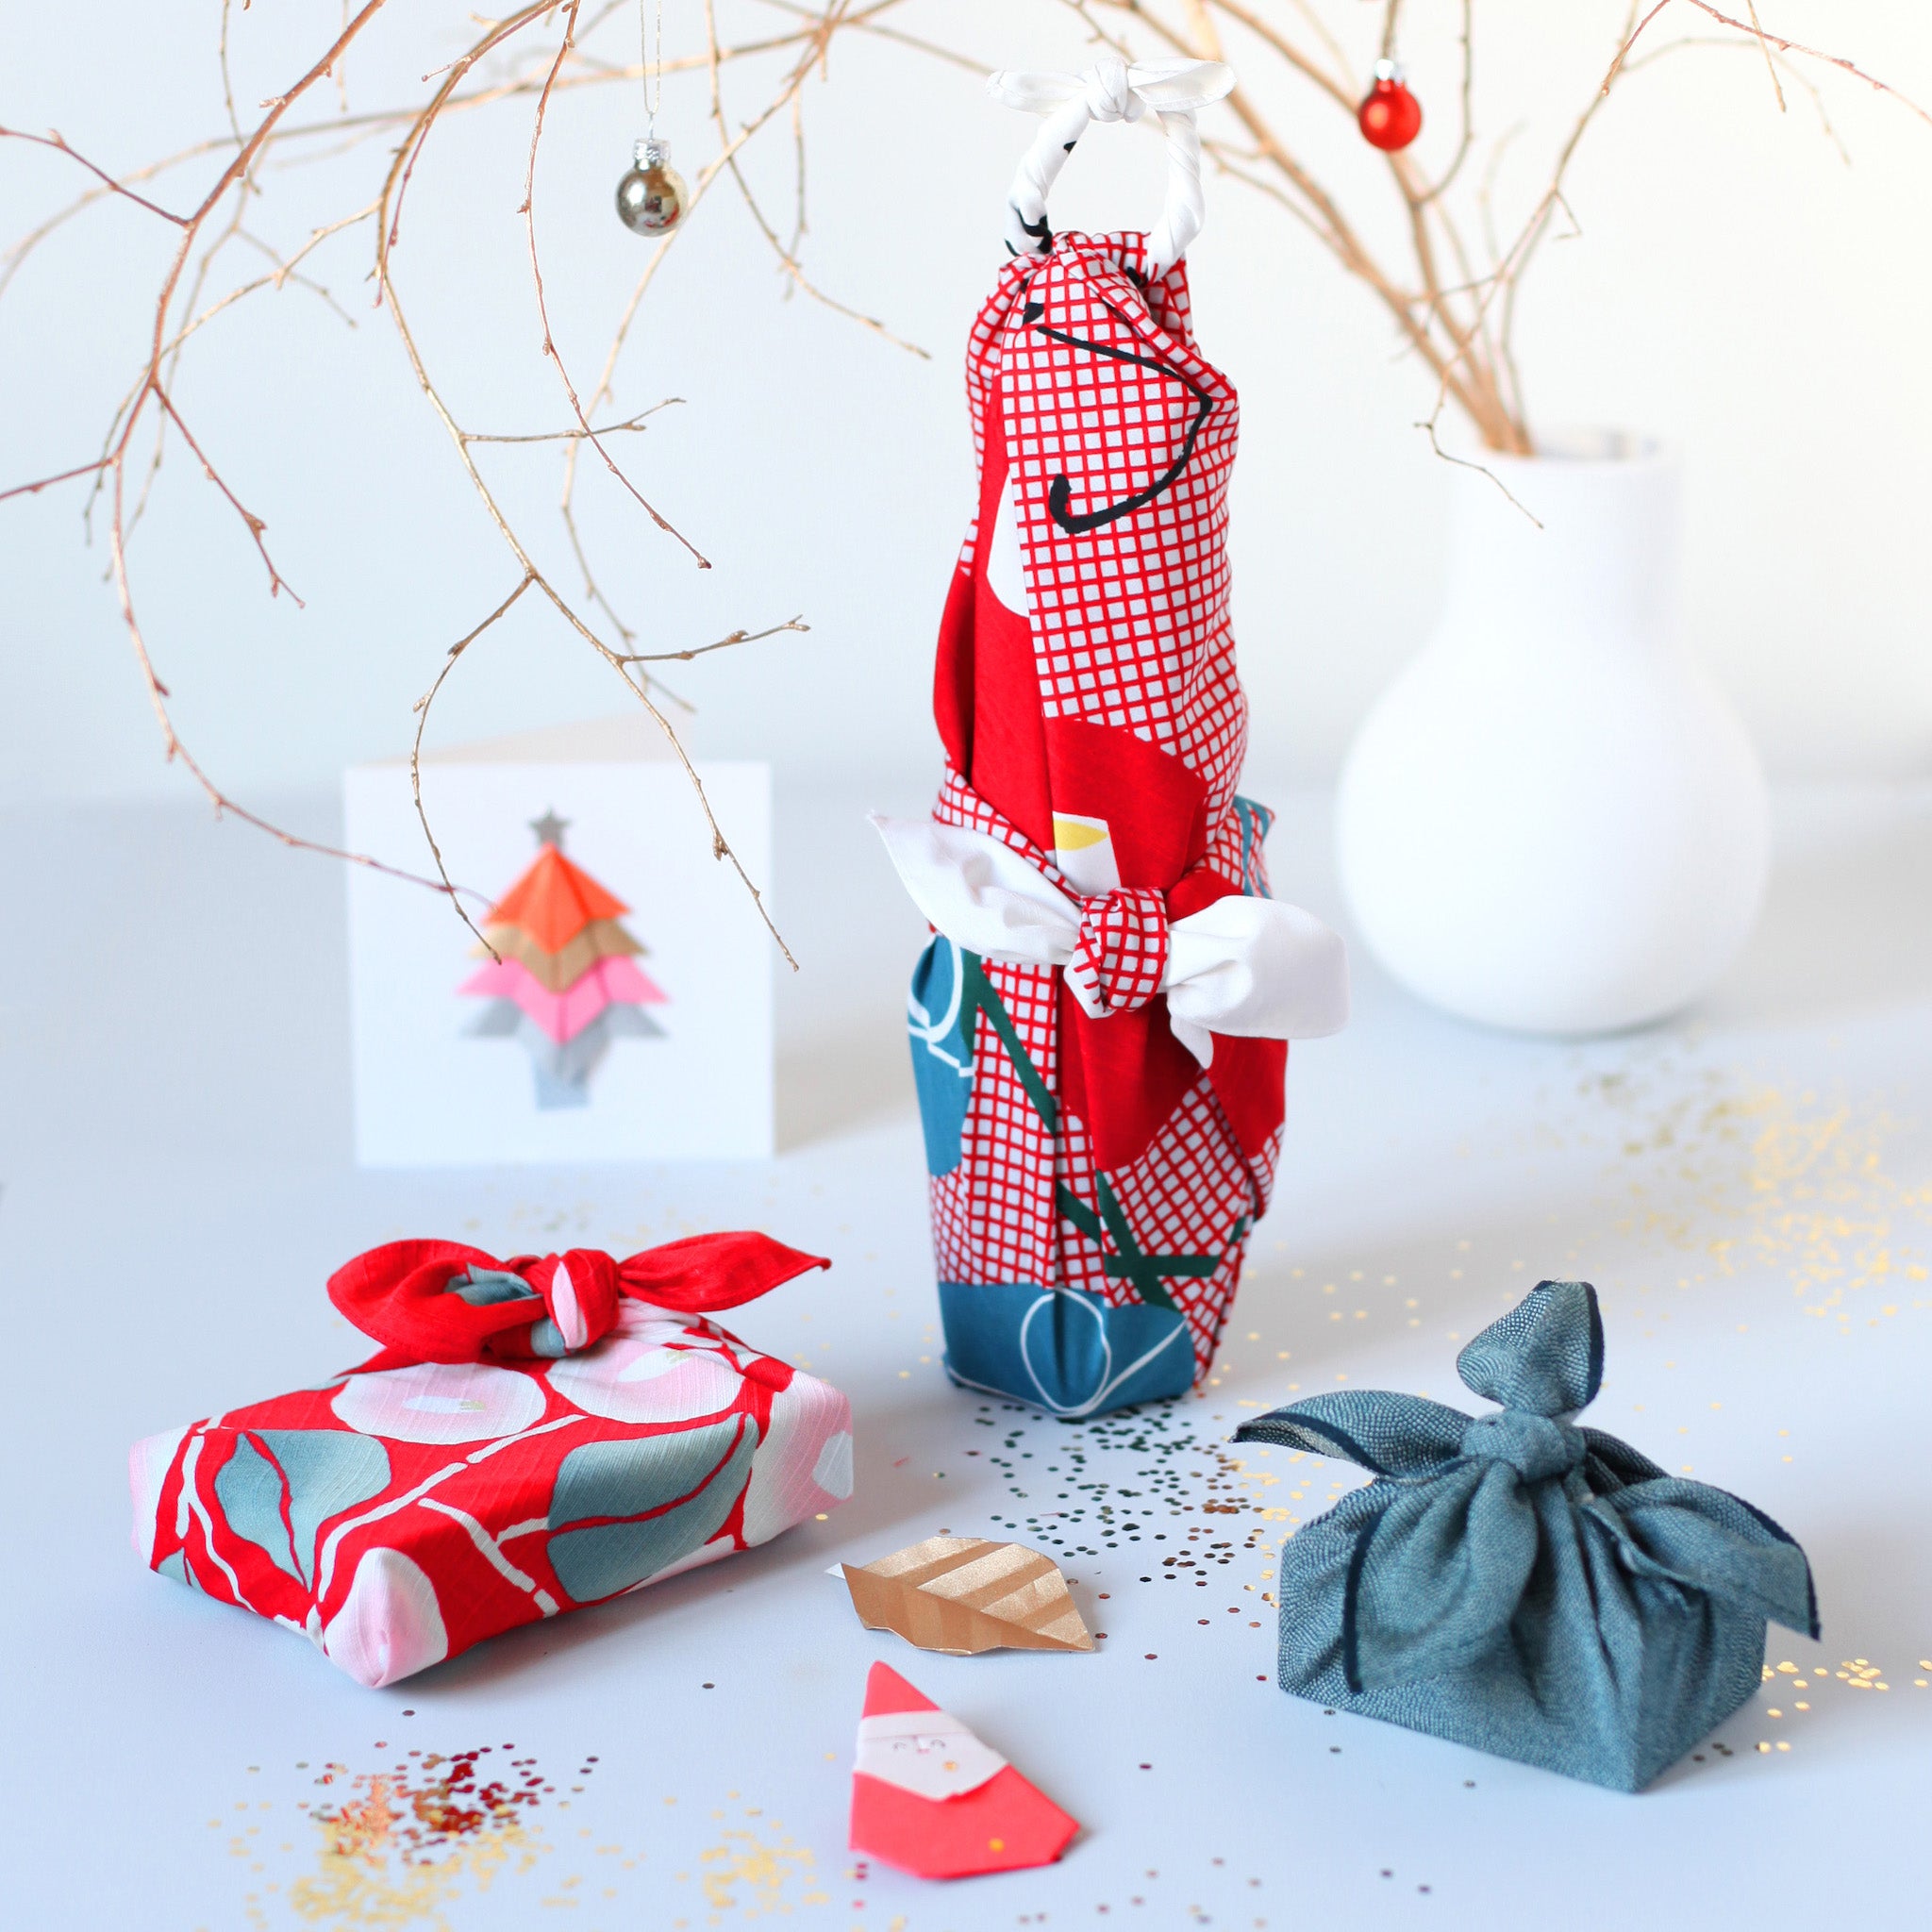 Un emballage cadeau avec un étoile de Noël en papier crépon